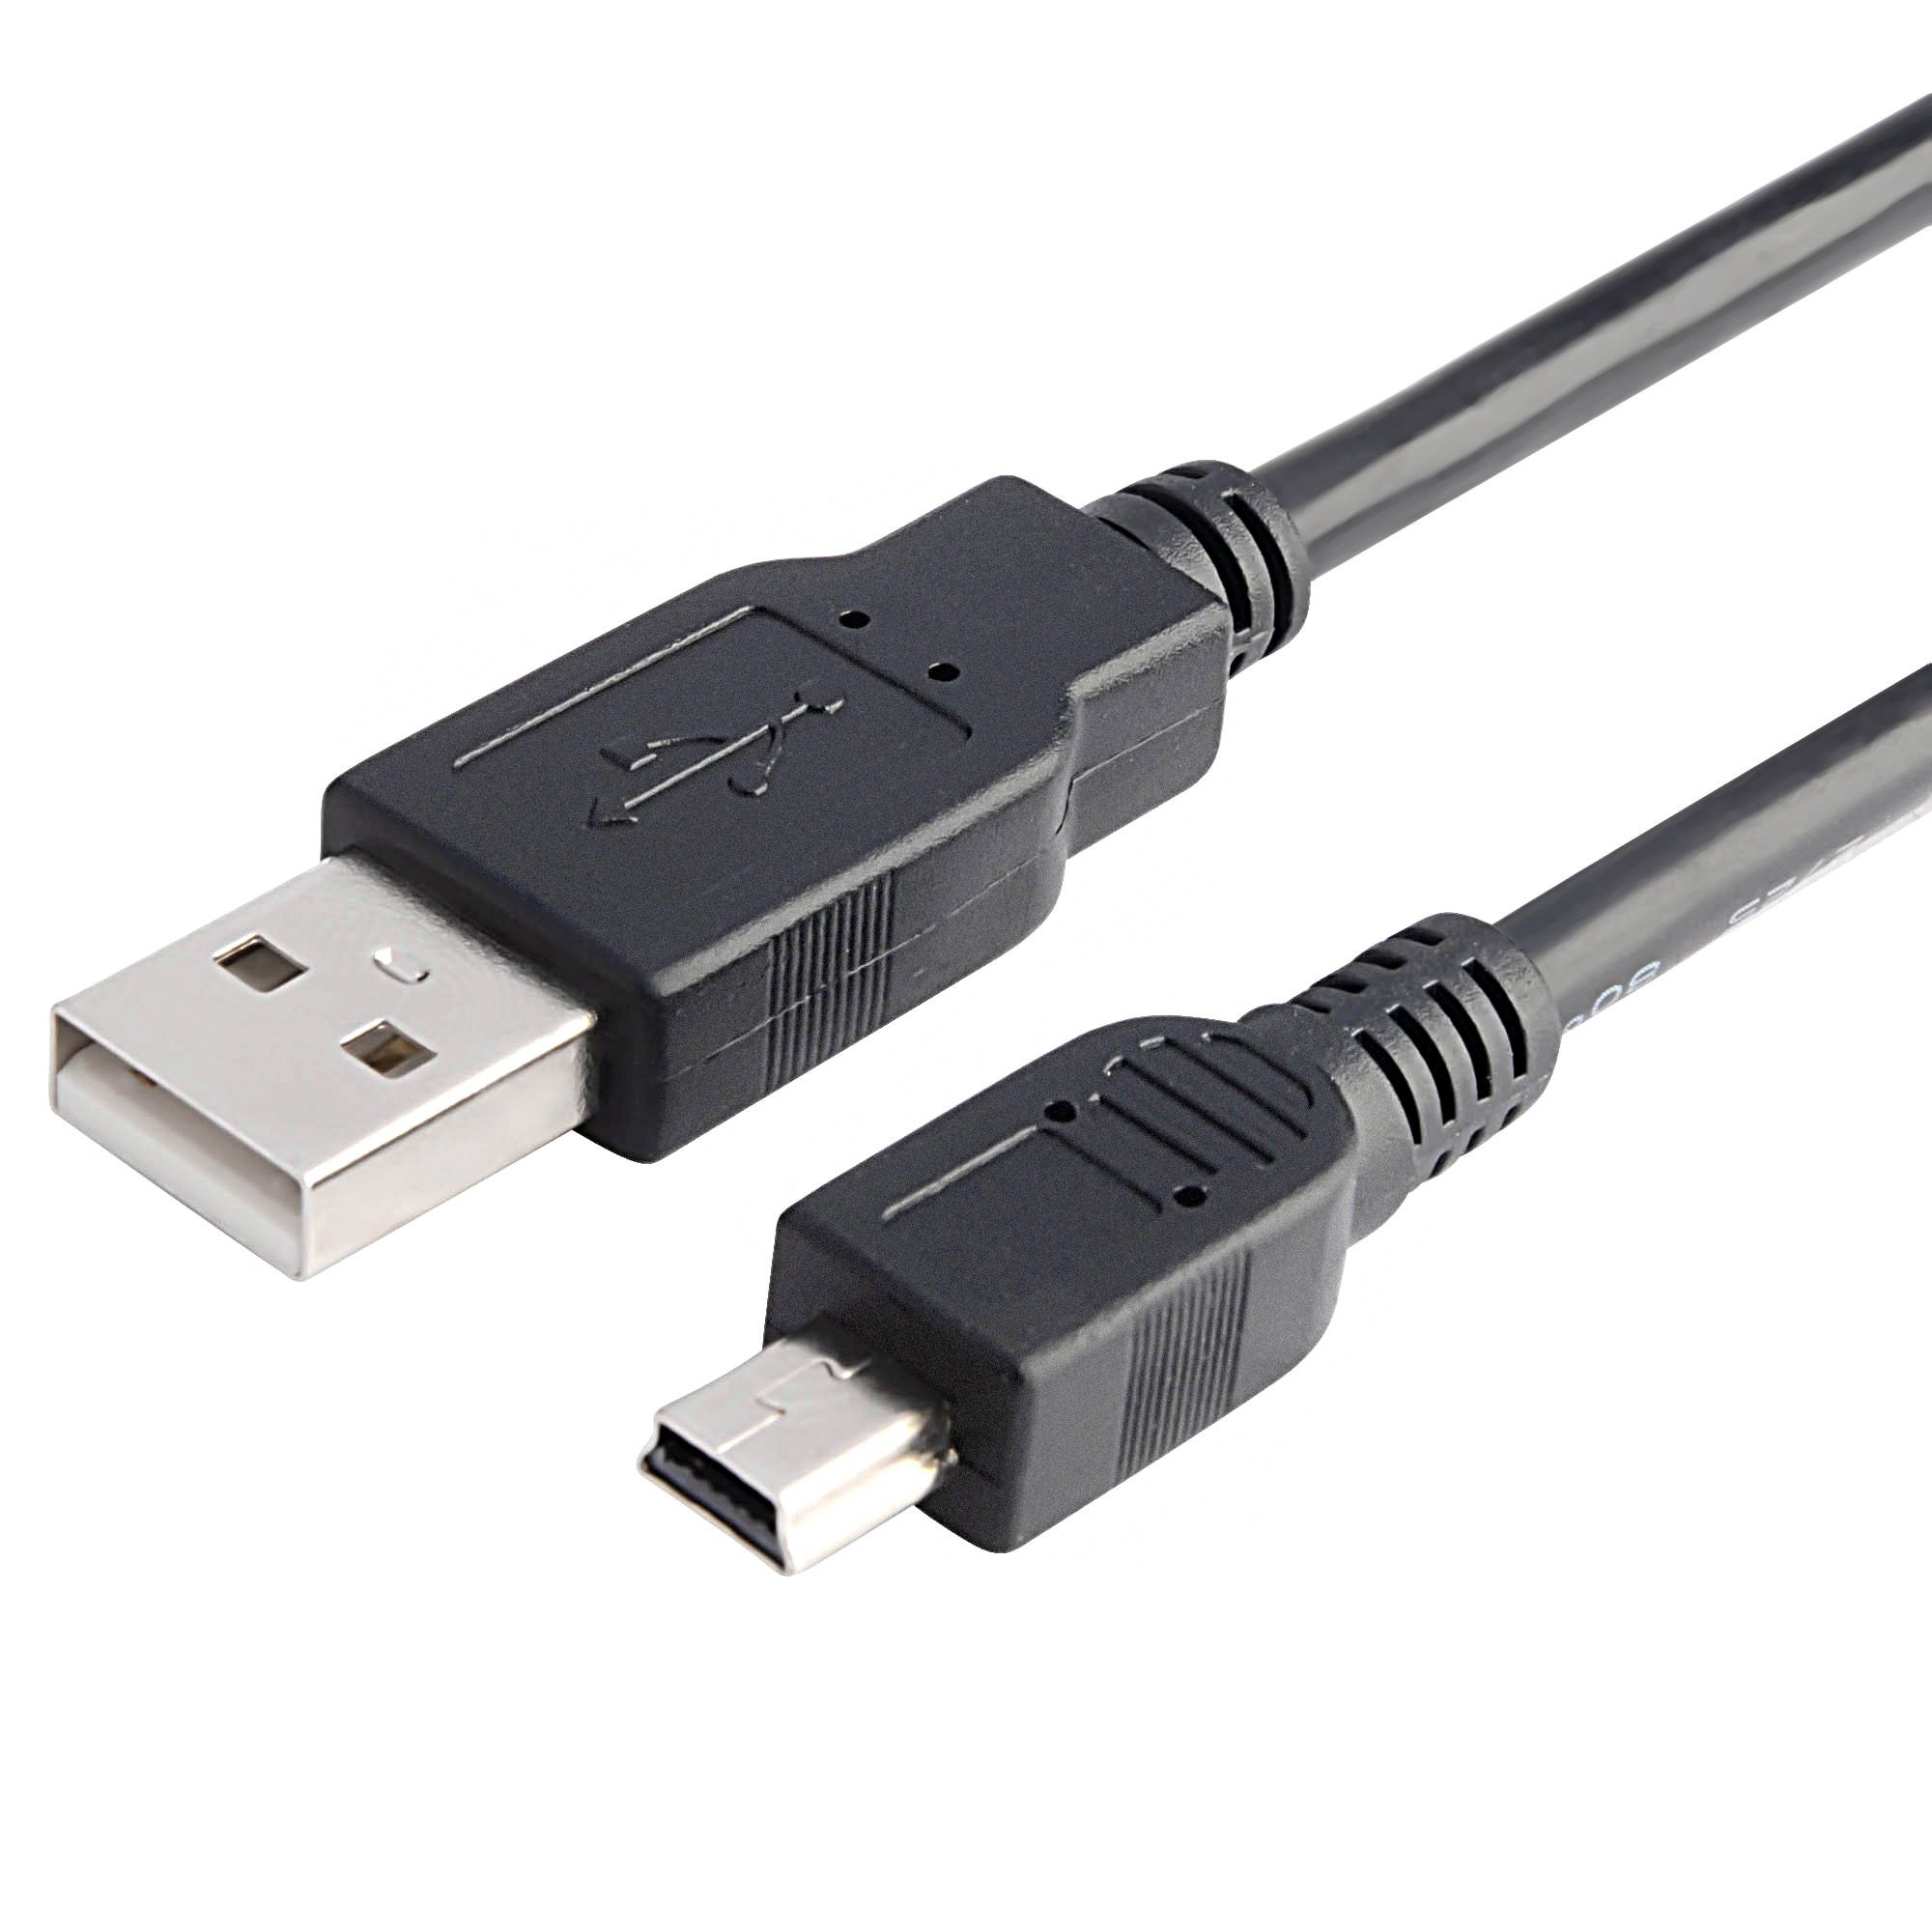 Nieuwe Mini USB kabel voor de PlayStation Portable - Playstation Portable Hardware